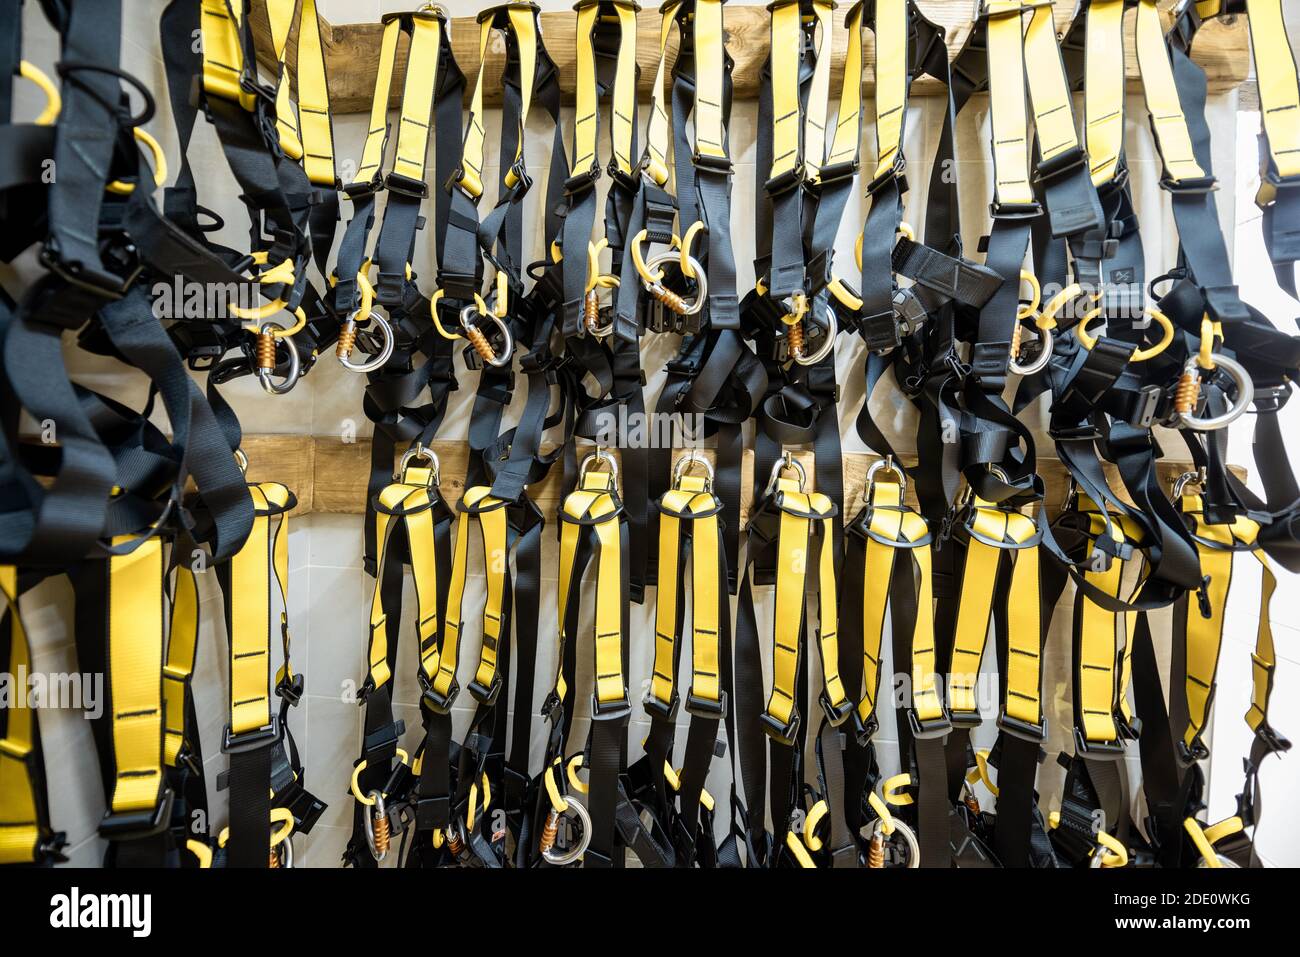 Professionelle Kletterausrüstung hängt im Vergnügungspark-Lager Stockfoto